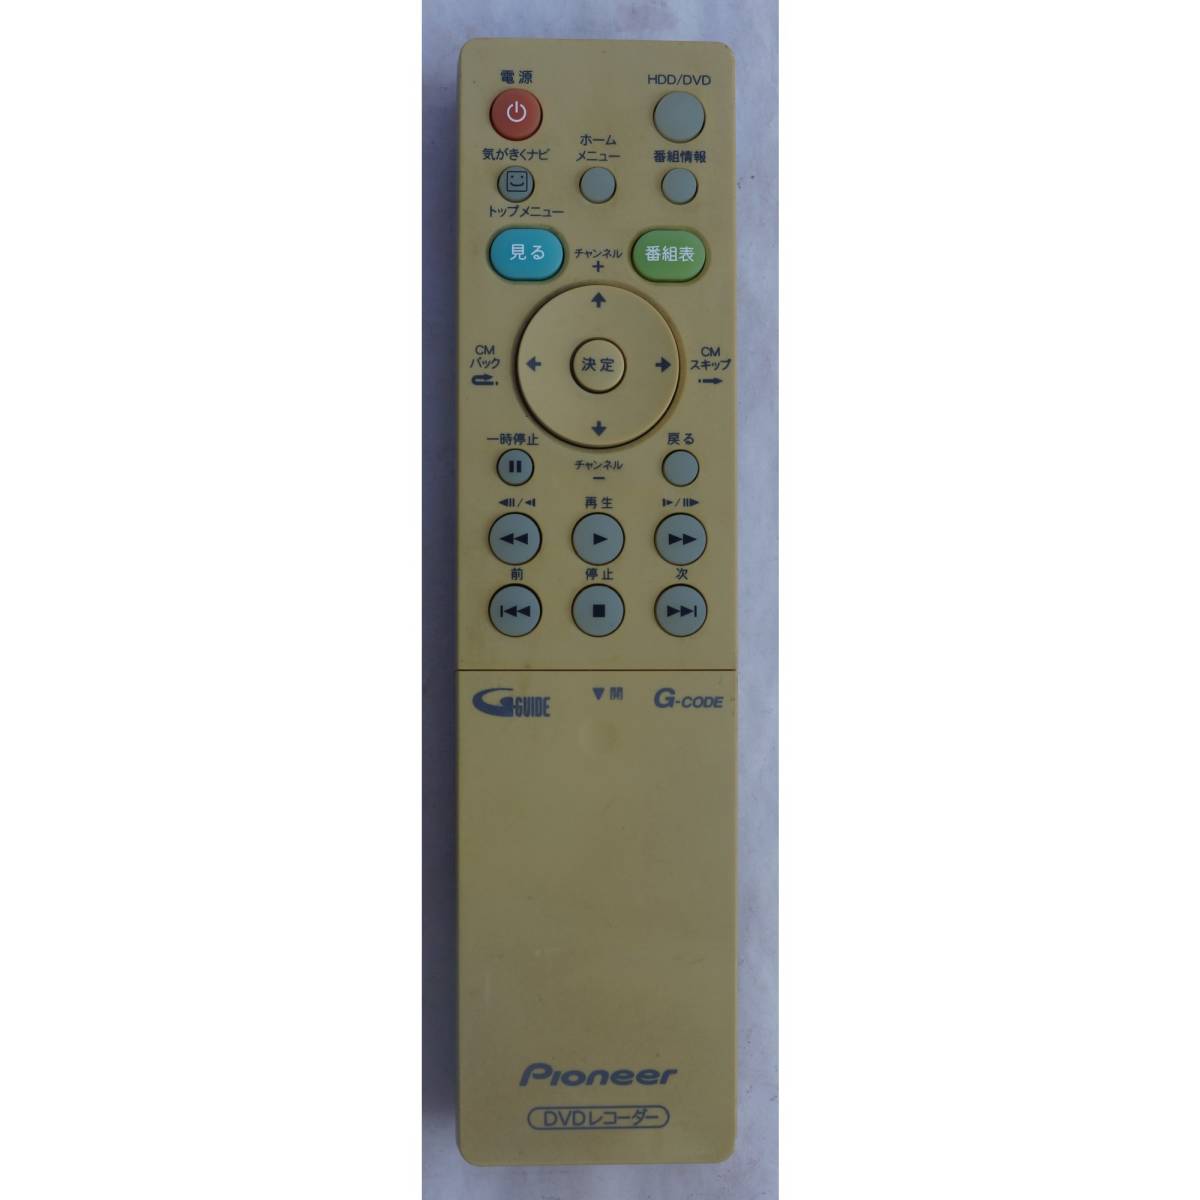  Pioneer PIONEER DVD recorder remote control VXX3100